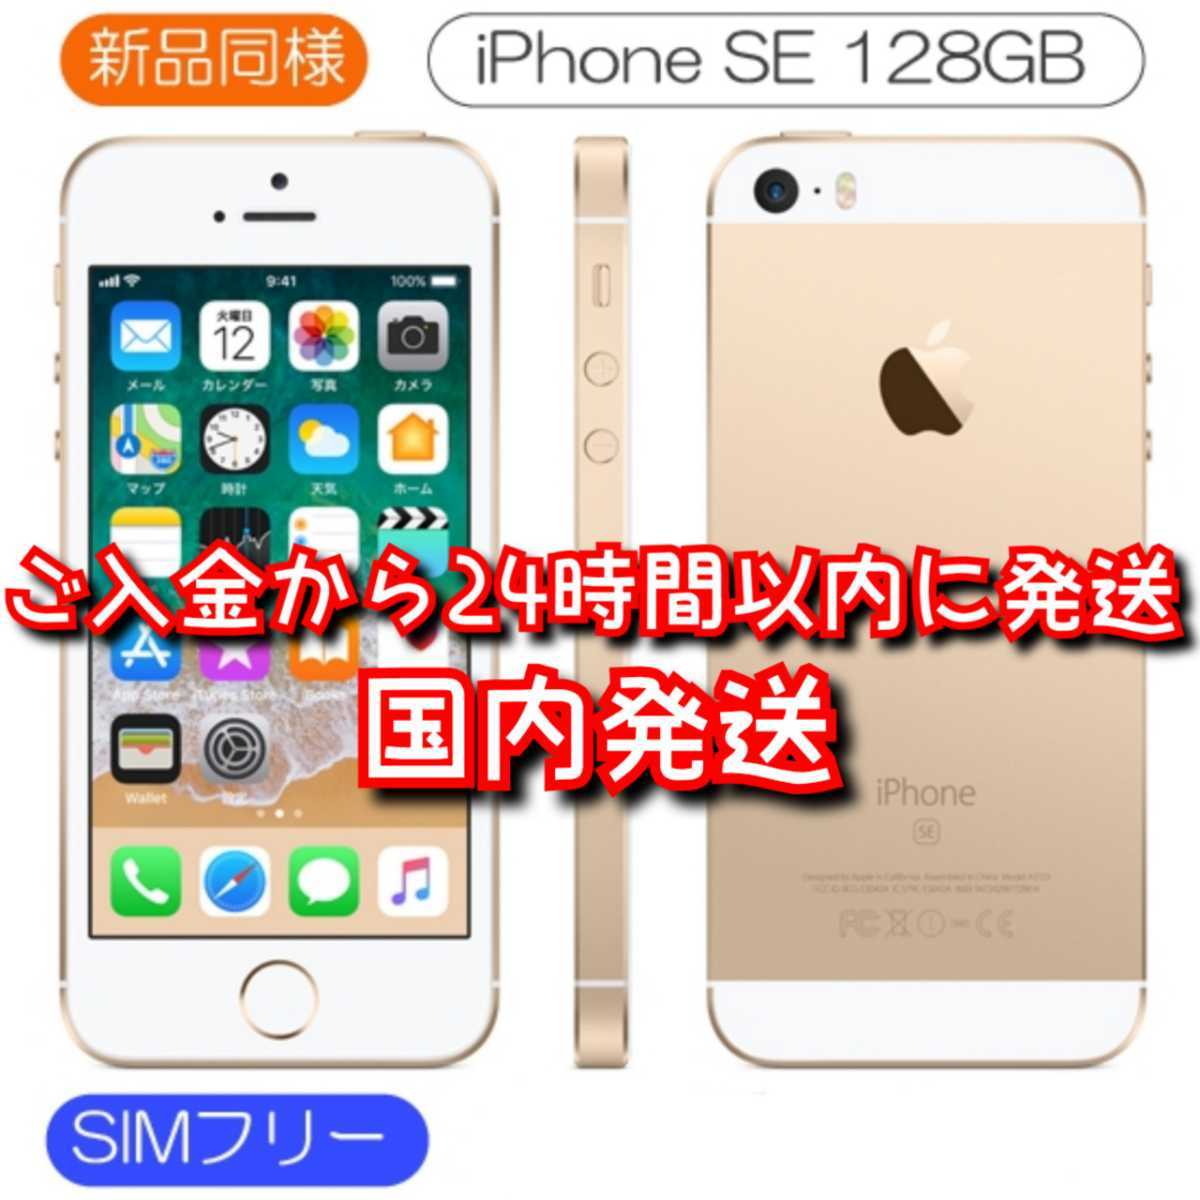 新品同等 iPhone SE A1723 128GB ゴールド 日本版版 SIMロック解除済み 送料無料 国内発送 IMEI 356607085650879